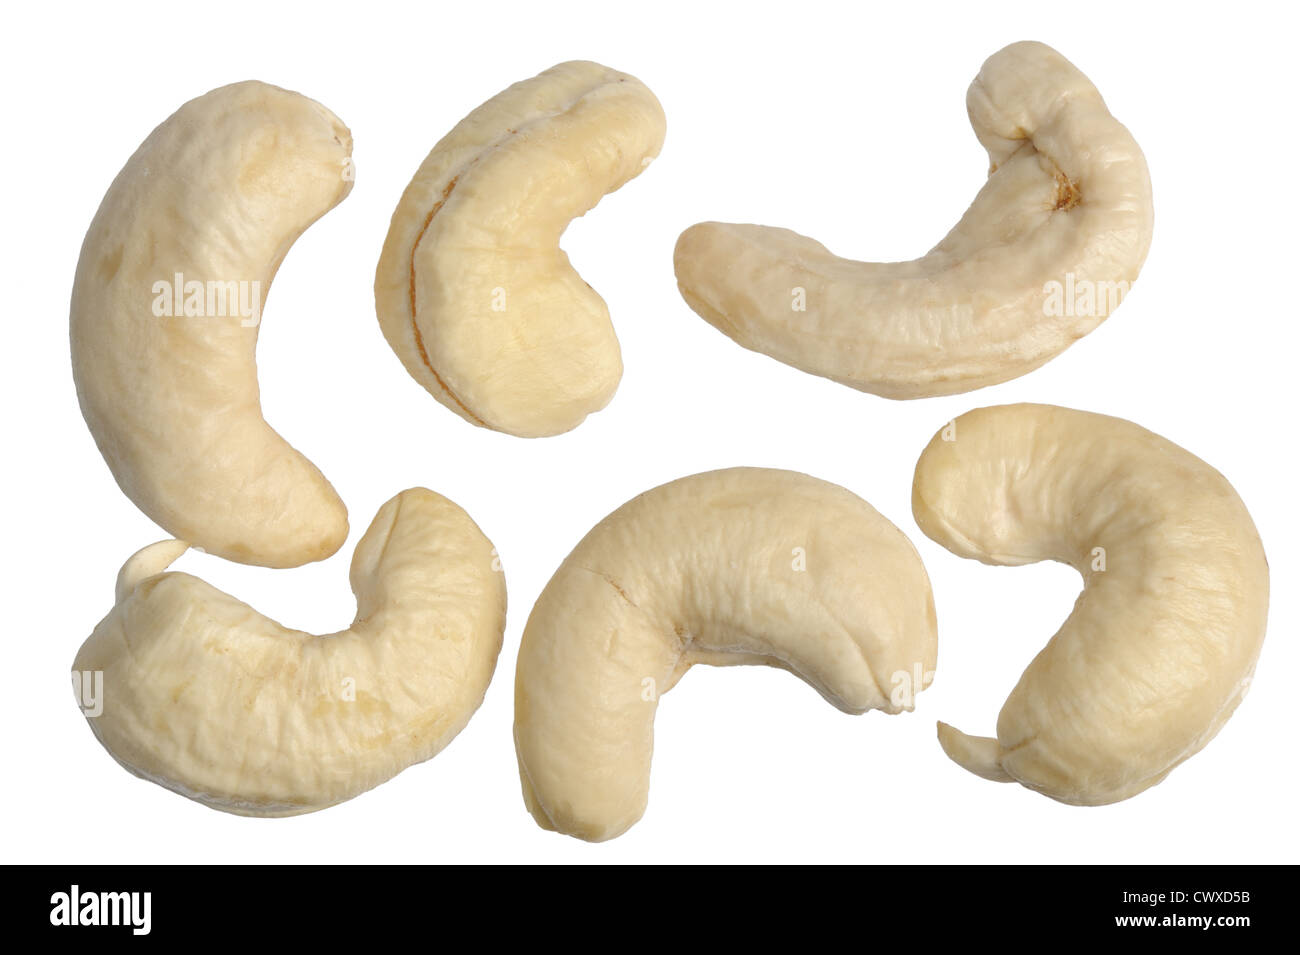 Die natürliche Maserung - Nahaufnahme von Cashew-Nüssen. Stockfoto